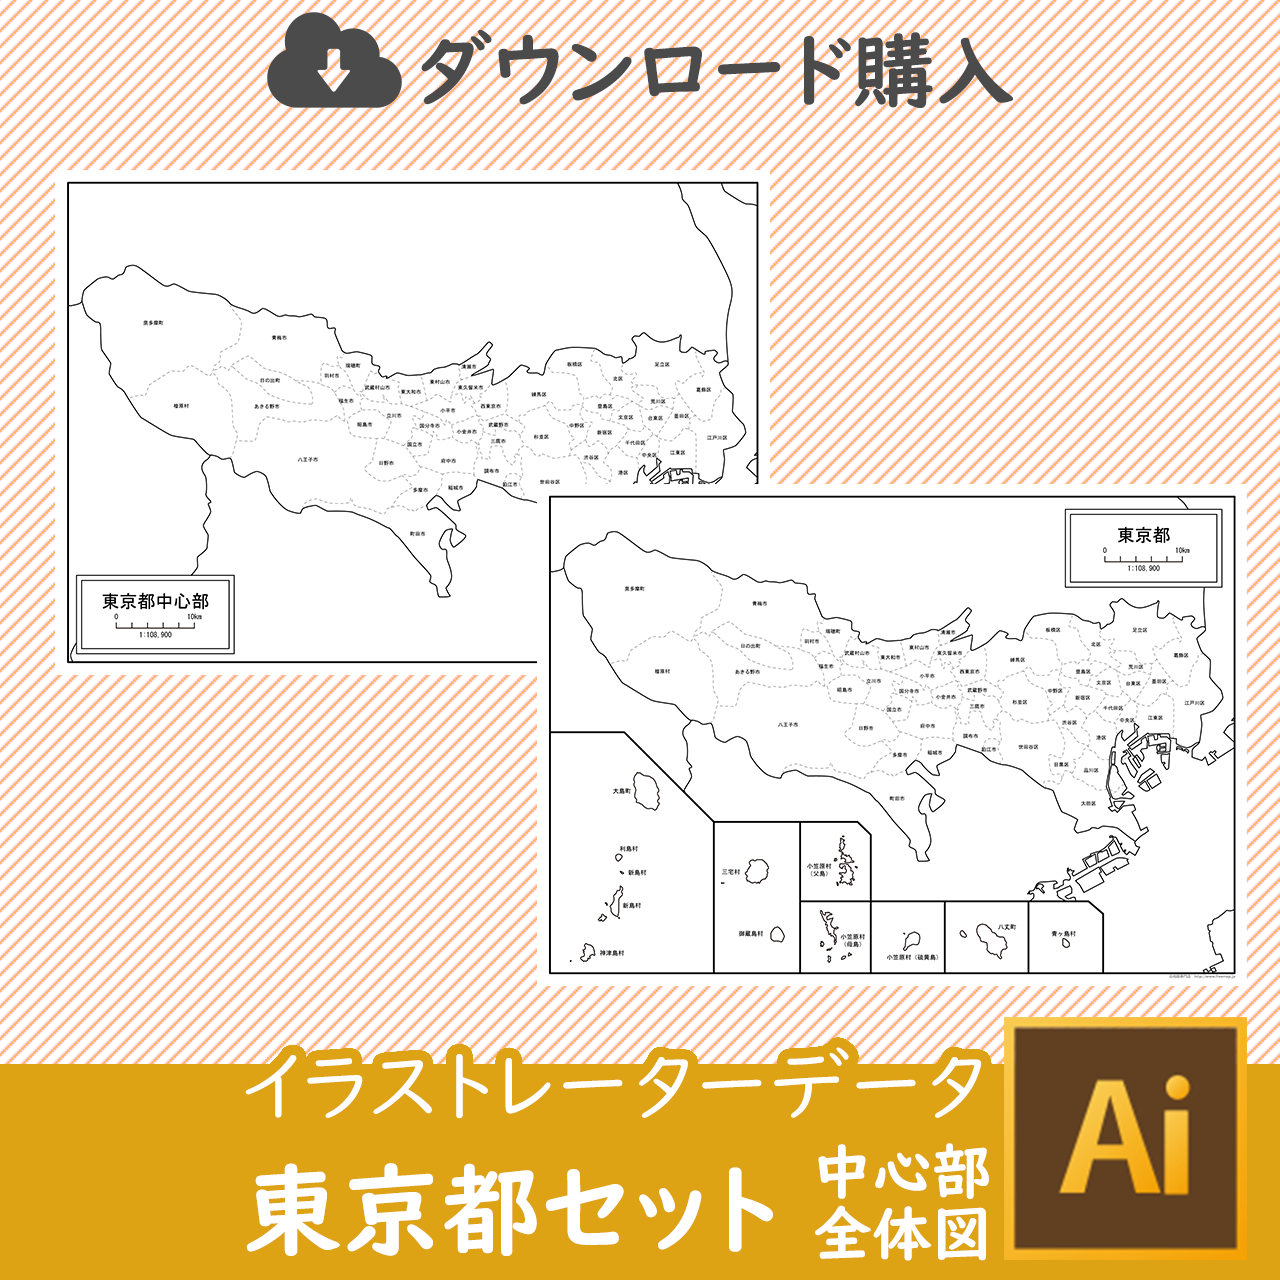 東京都全体のイラストレータデータのサムネイル